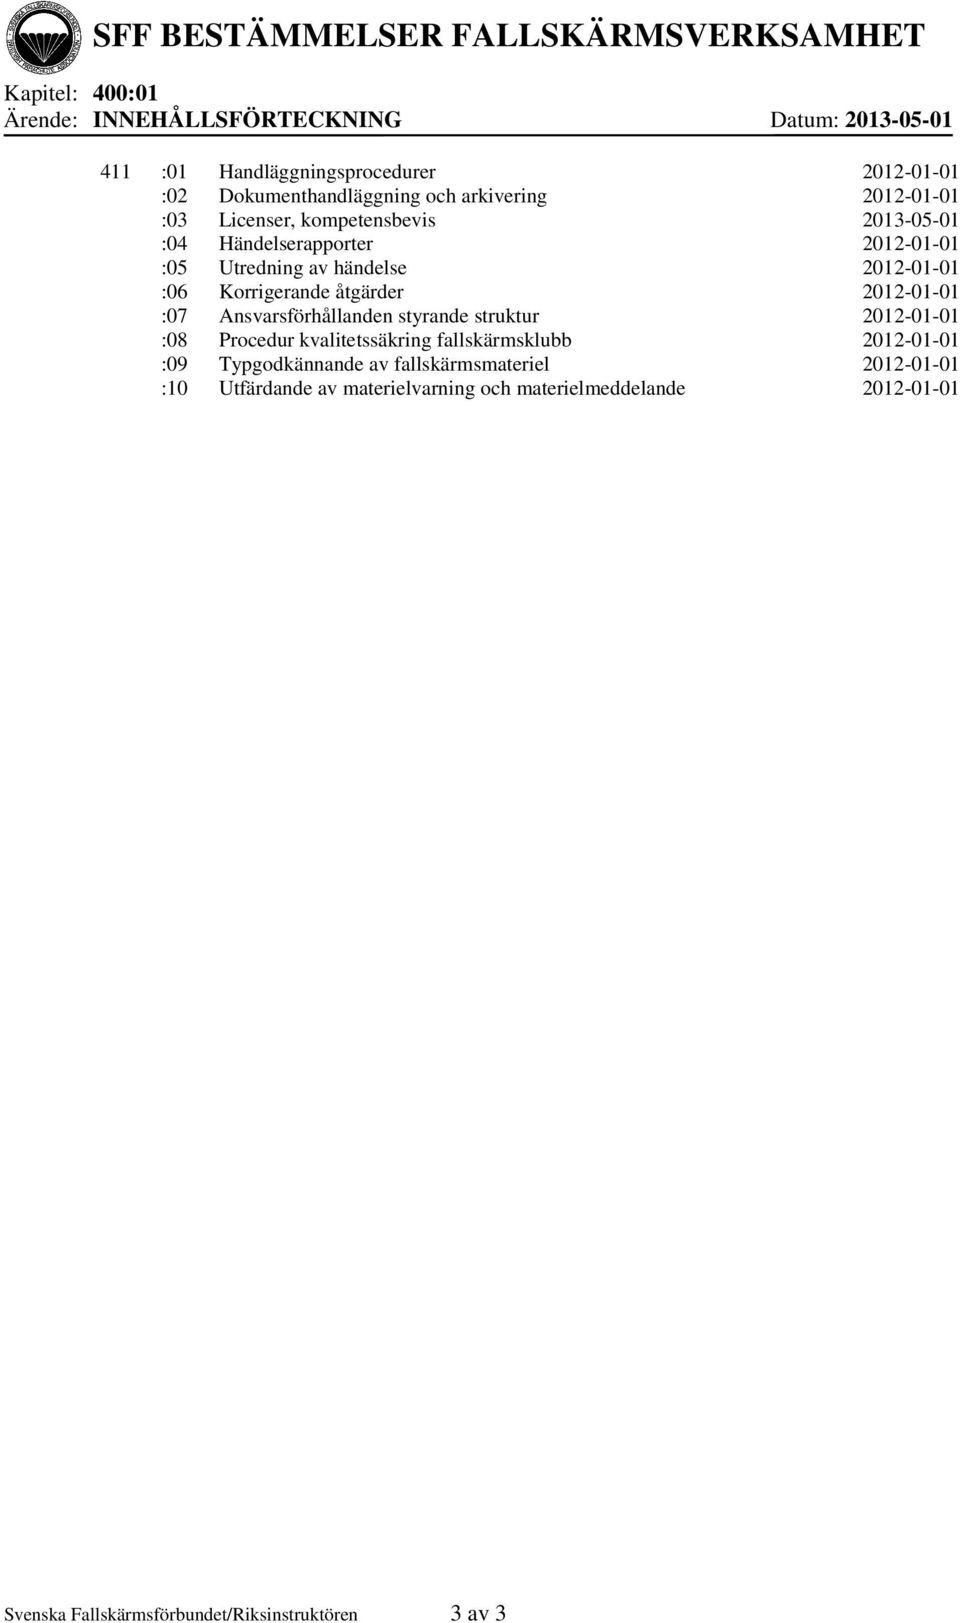 2012-01-01 :07 Ansvarsförhållanden styrande struktur 2012-01-01 :08 Procedur kvalitetssäkring fallskärmsklubb 2012-01-01 :09 Typgodkännande av